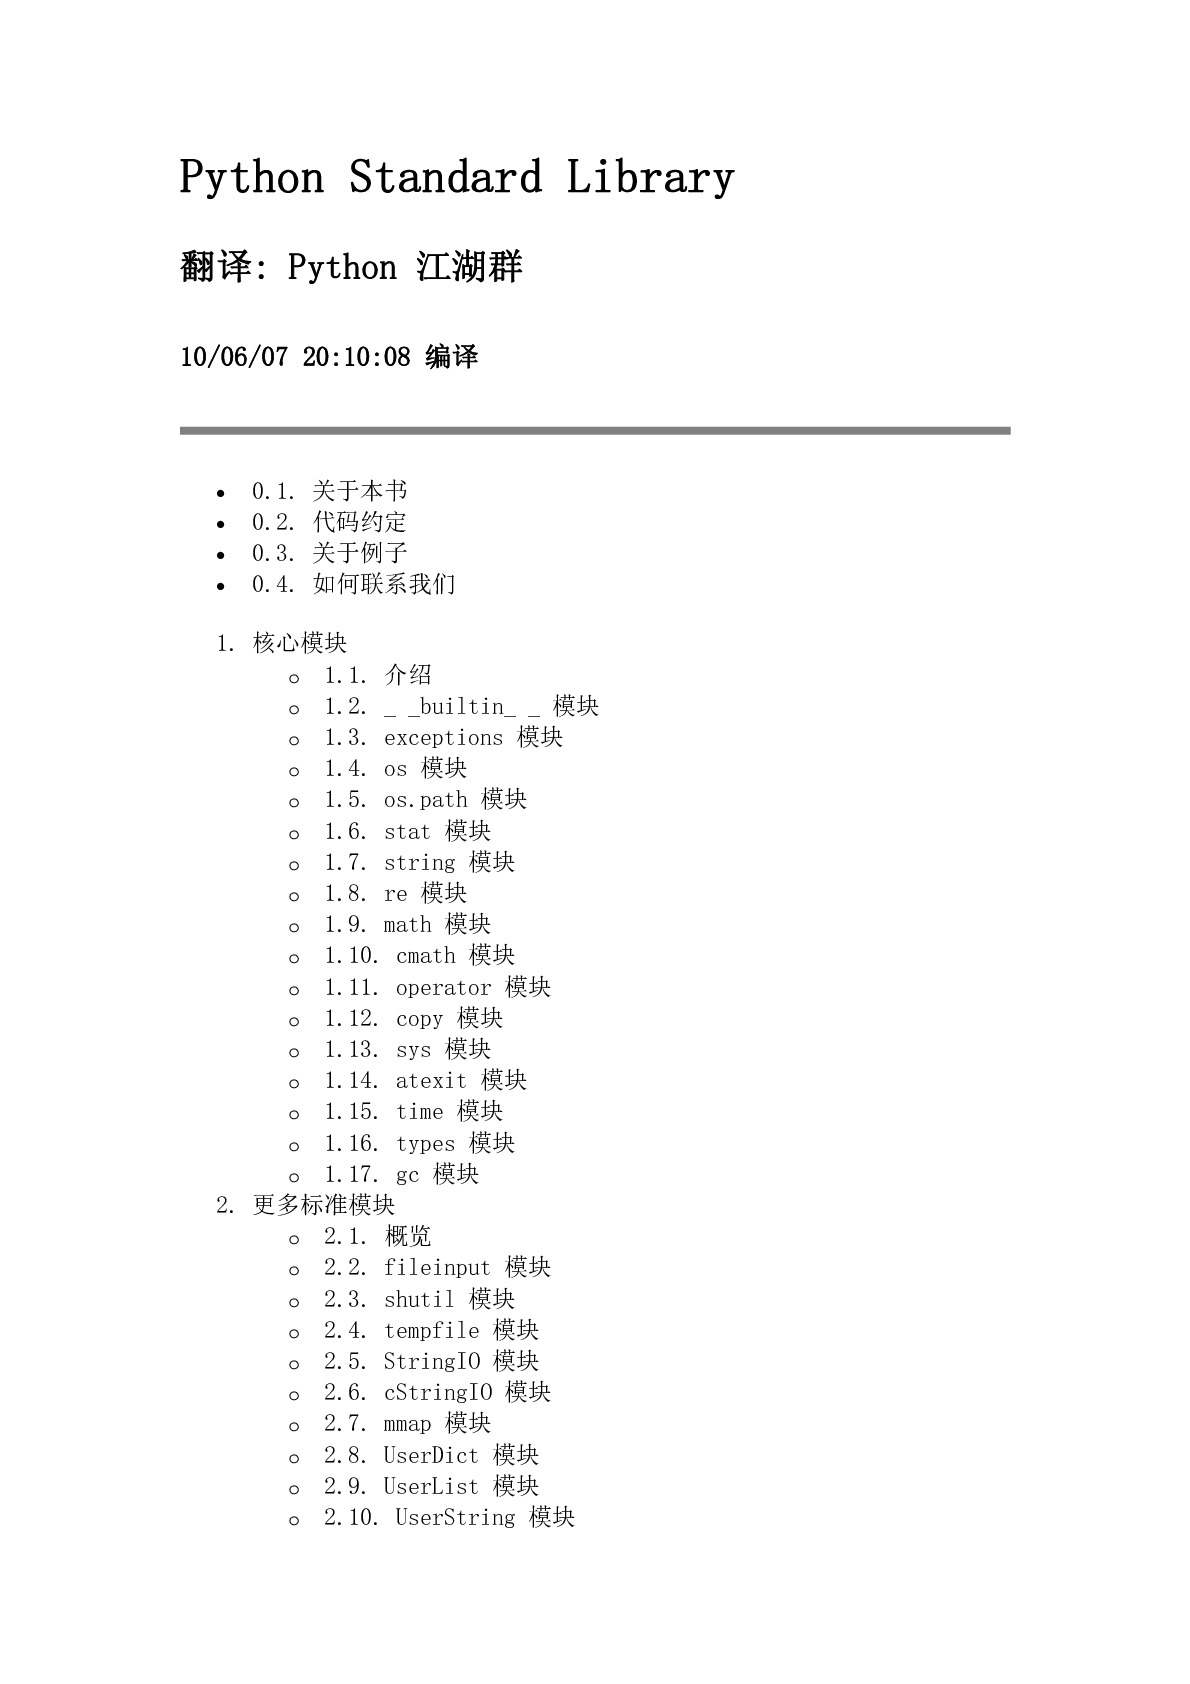 《python标准库》中文版教程